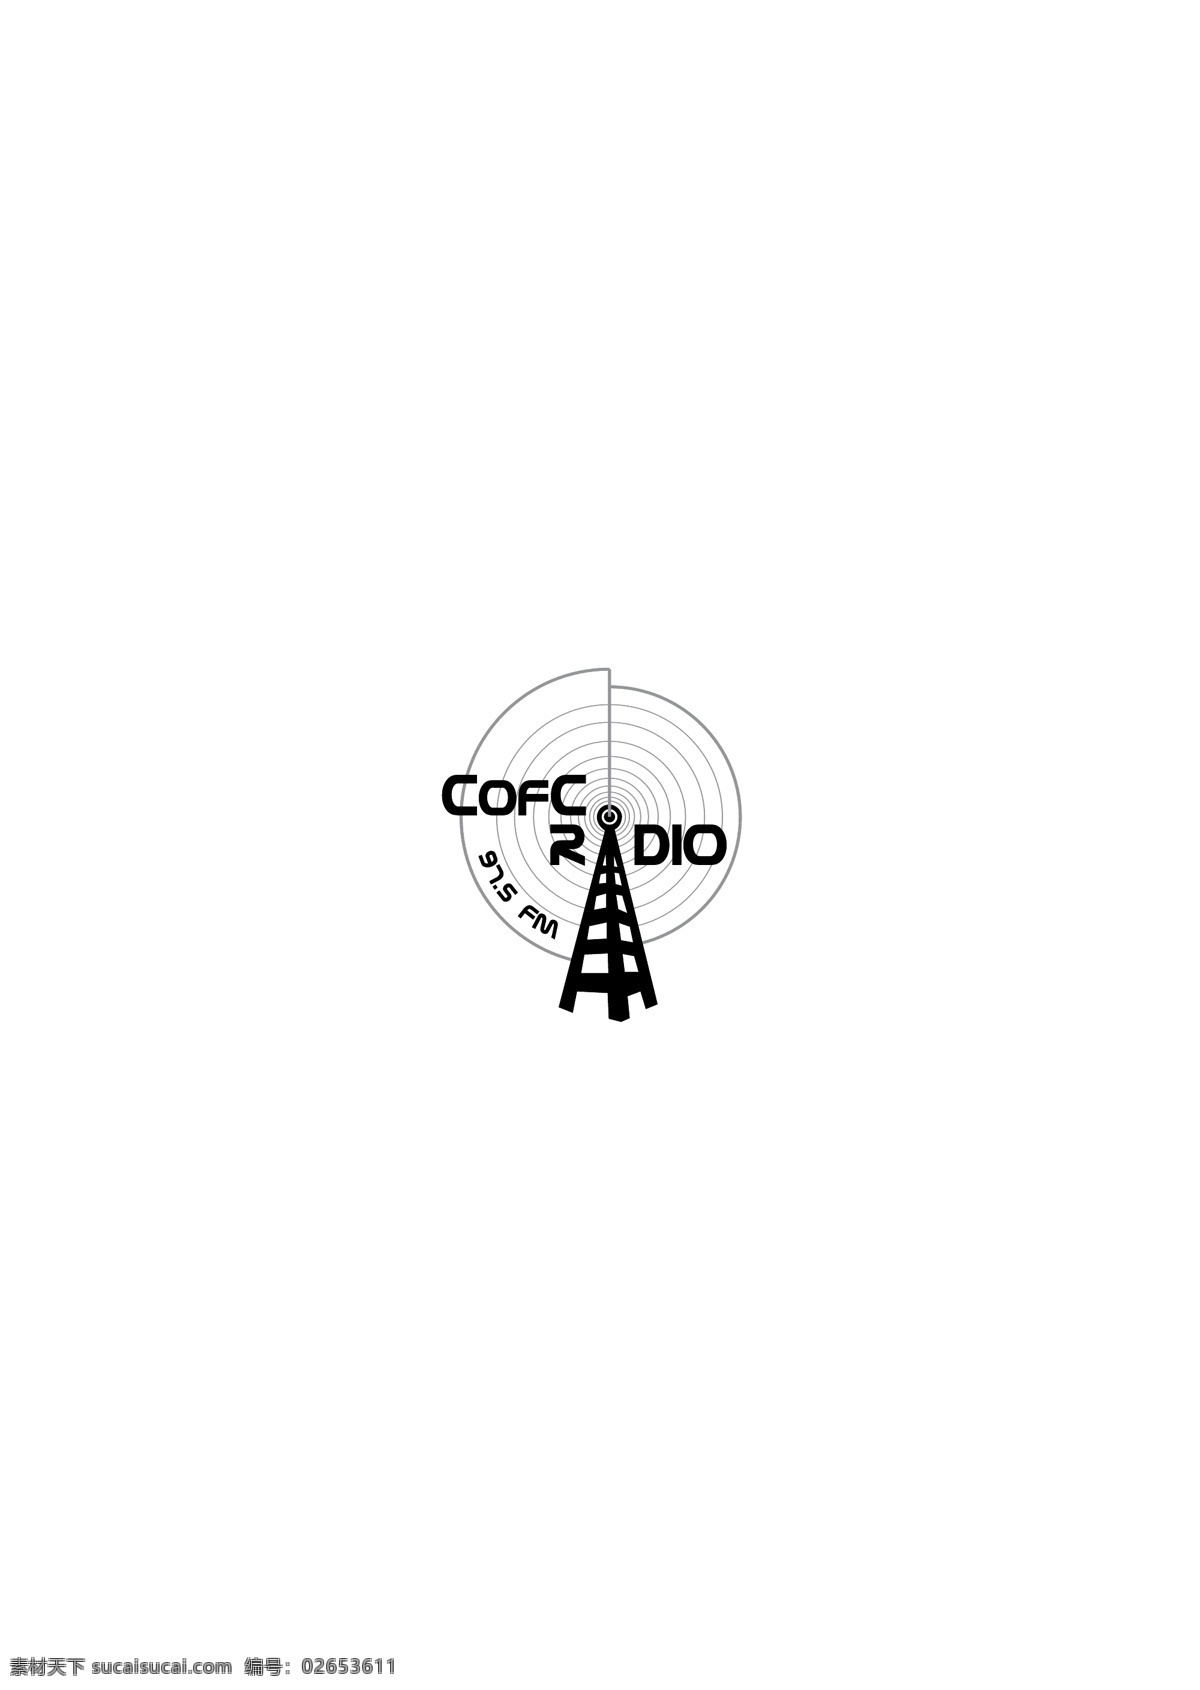 logo大全 logo 设计欣赏 of 商业矢量 矢量下载 college charleston radio 5fm 标志设计 欣赏 网页矢量 矢量图 其他矢量图